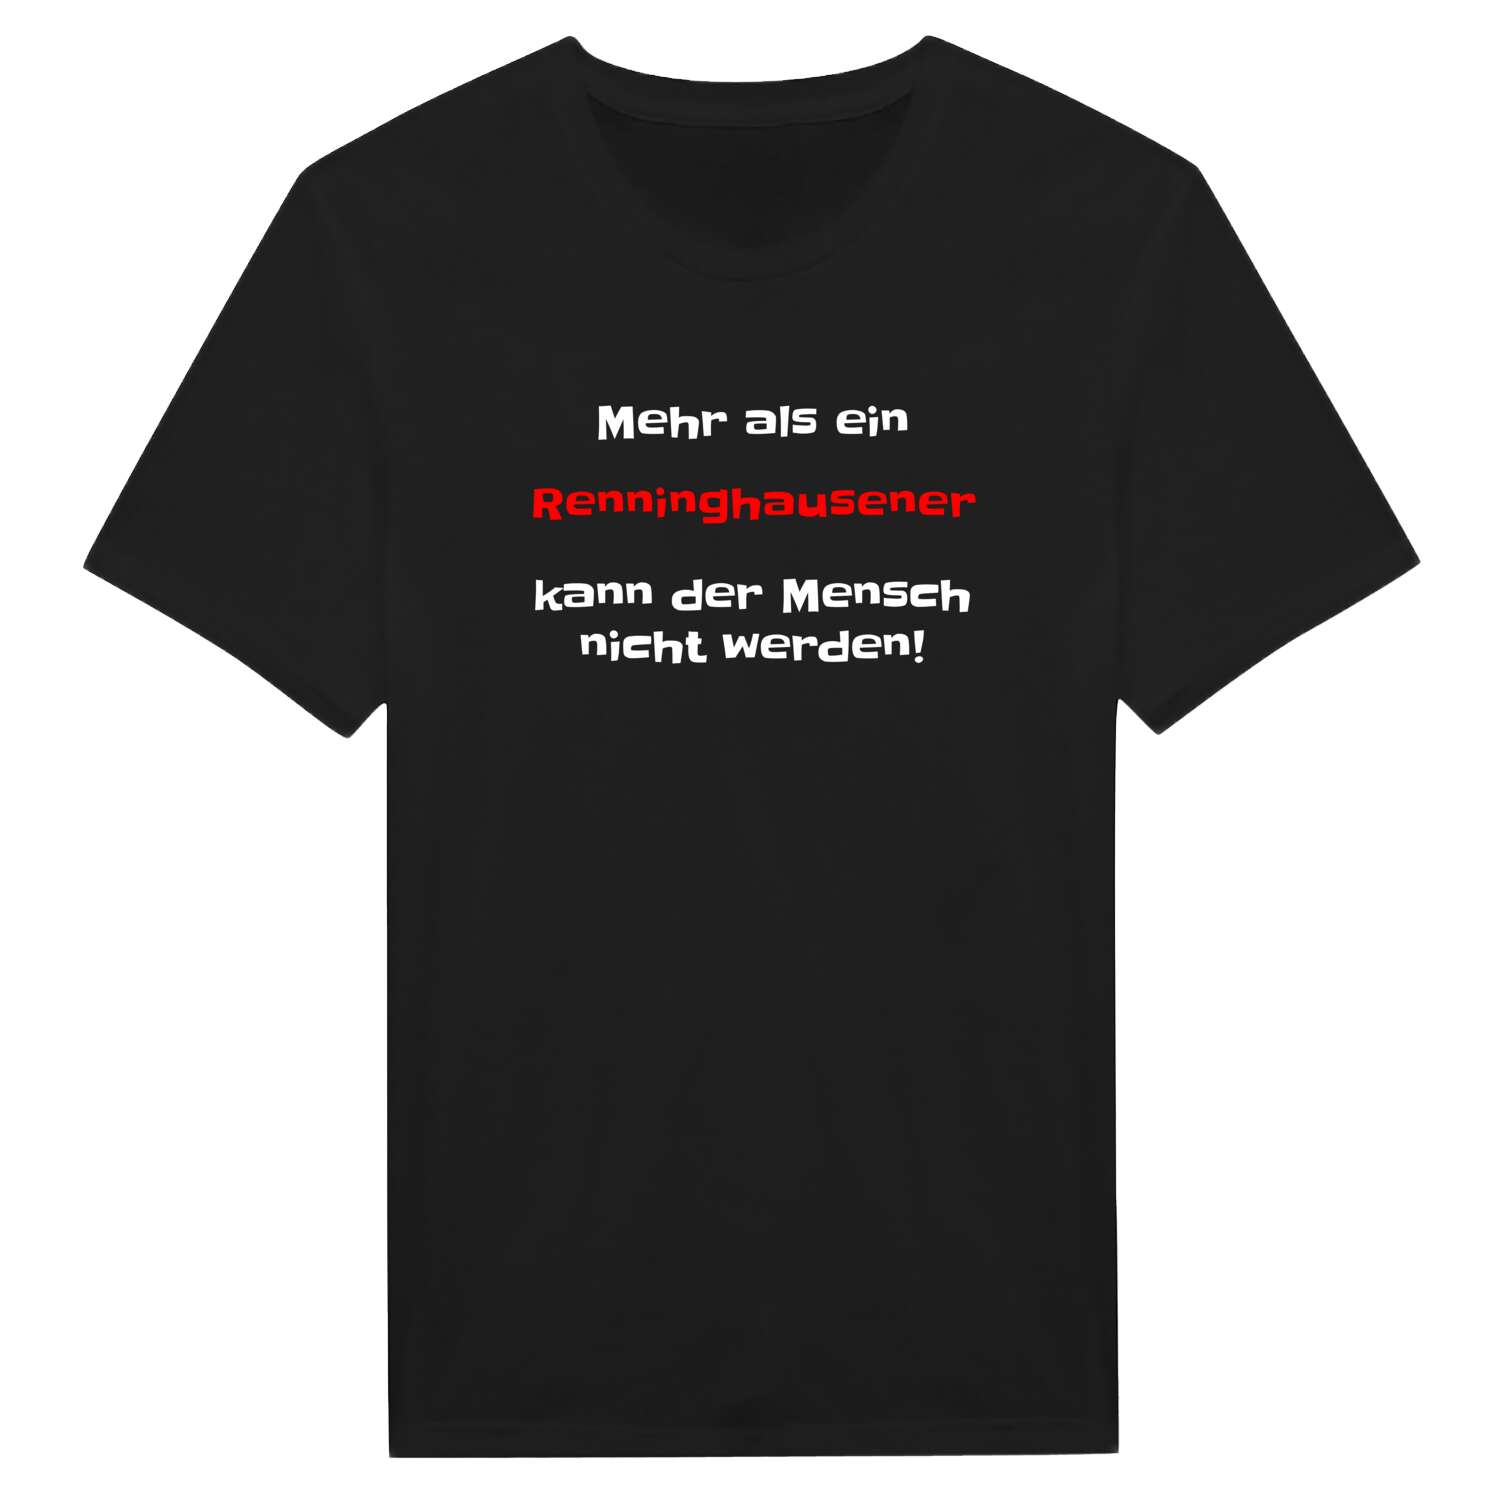 Renninghausen T-Shirt »Mehr als ein«